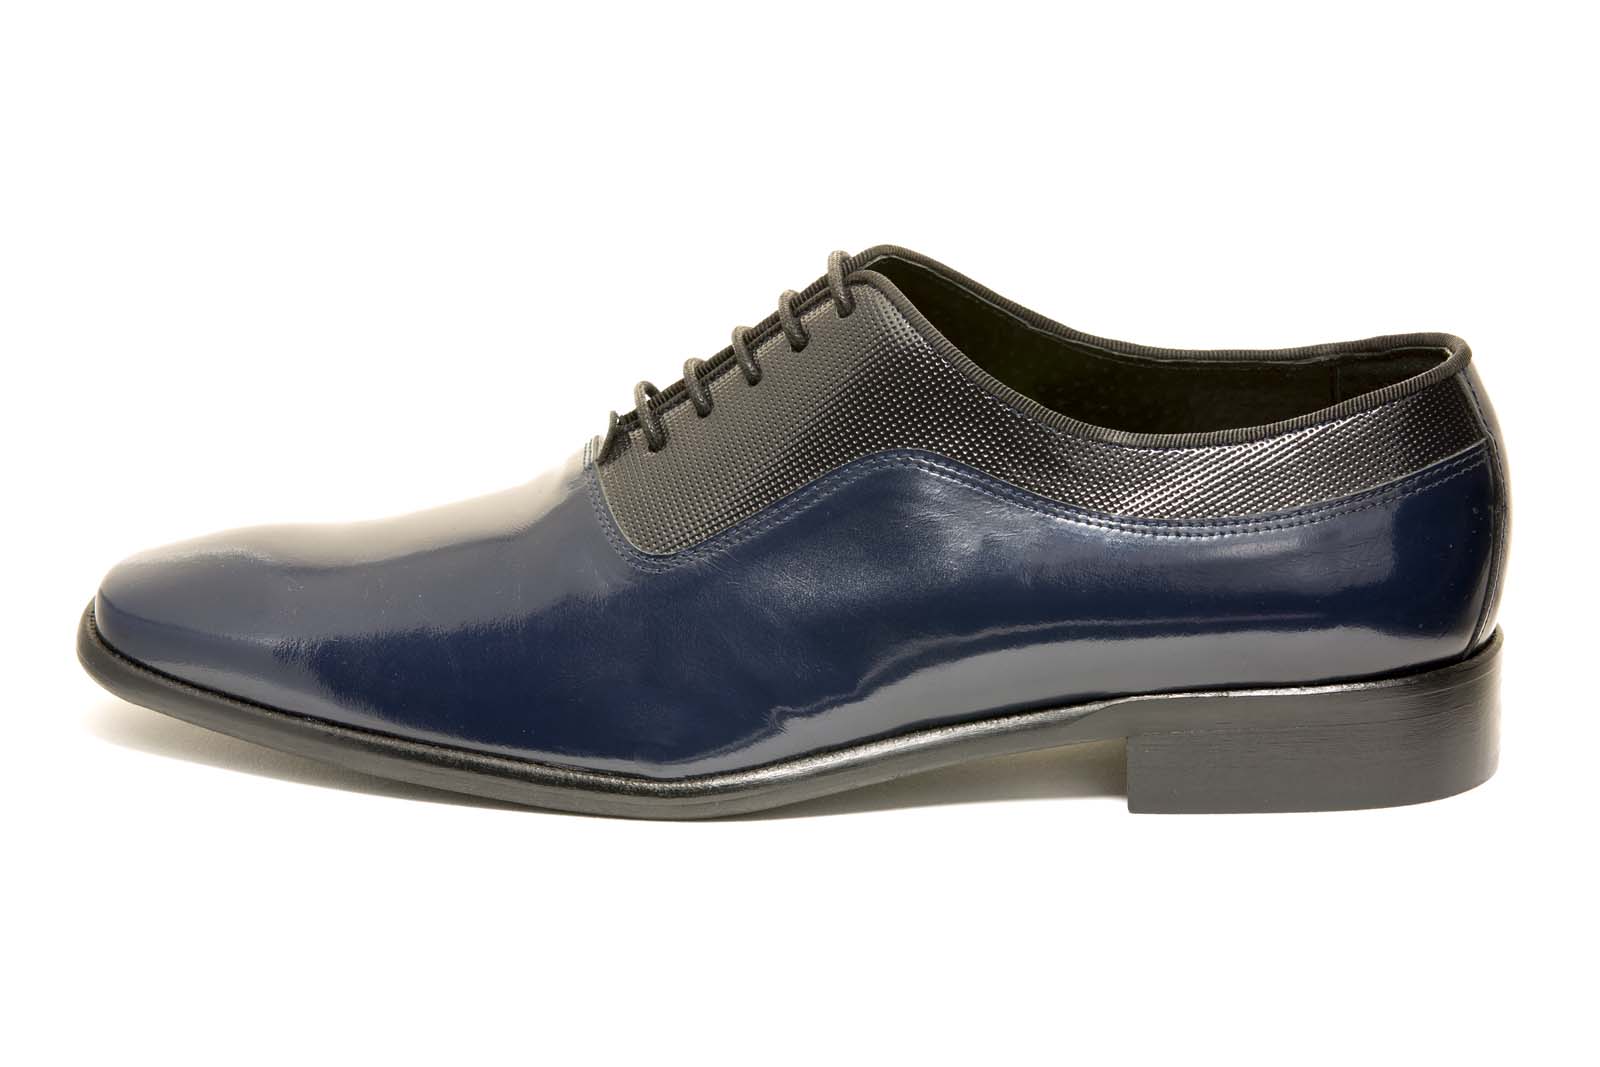 Zapatos de novio modelo Oxford en piel de color azul